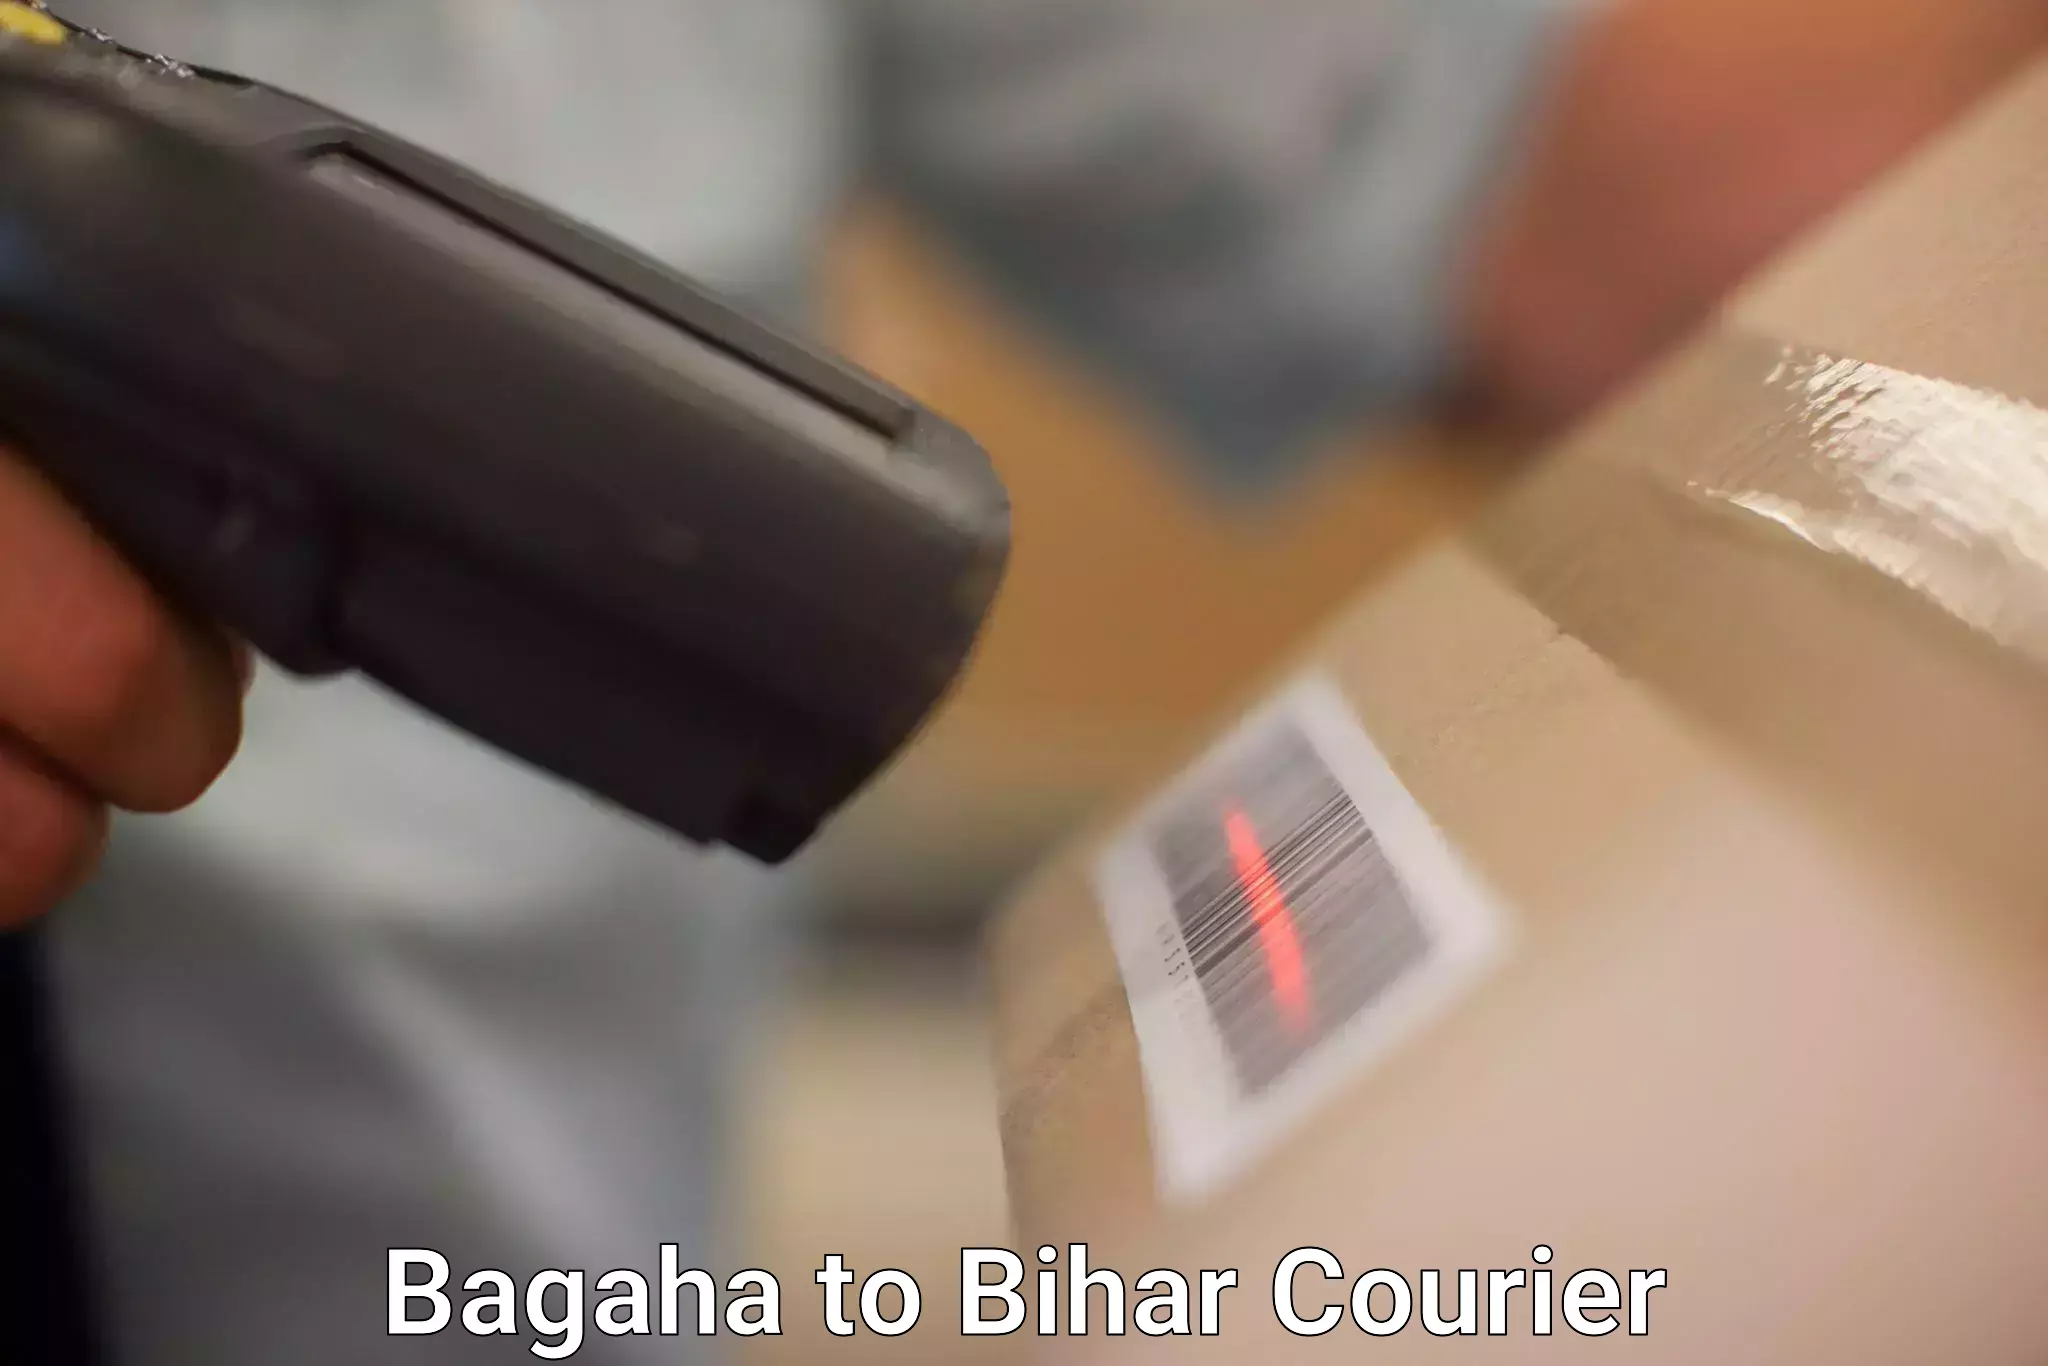 24/7 courier service Bagaha to Mirganj